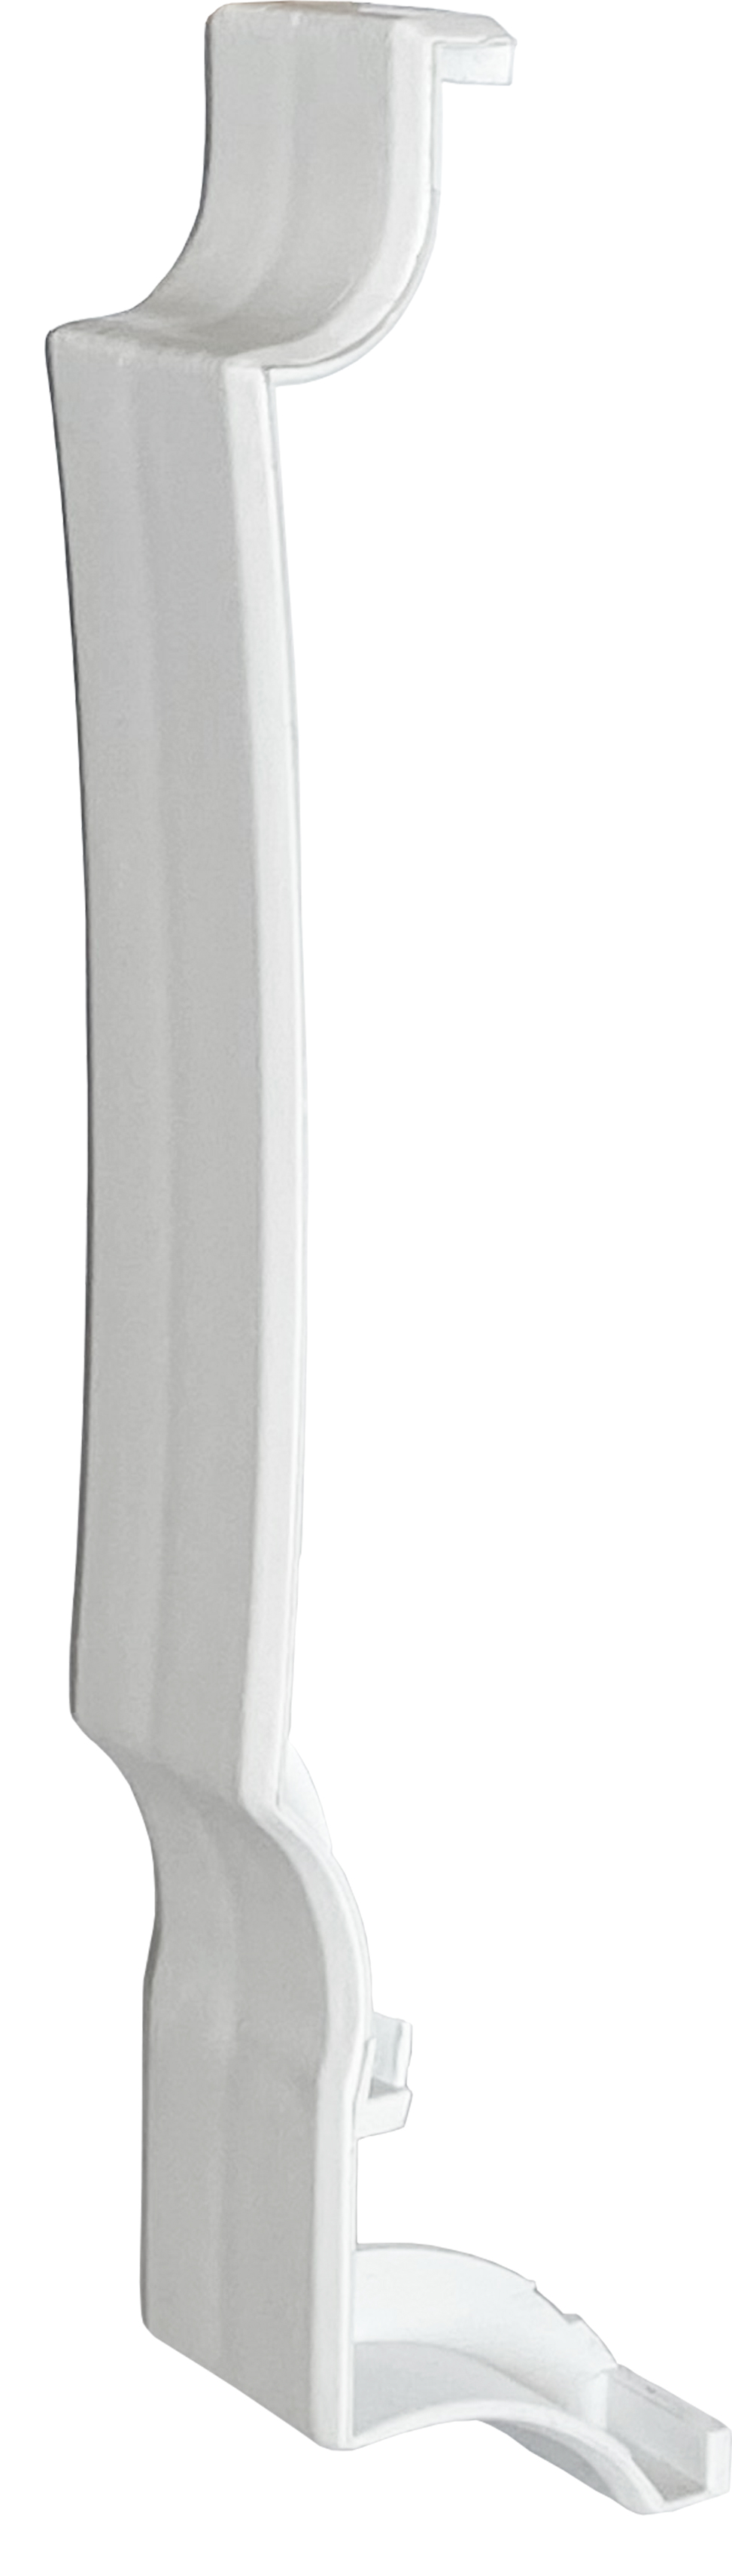 Відгуки аксесуар для плінтусного нагрівача Термія планка з'єднувальна ПЗ (біла)